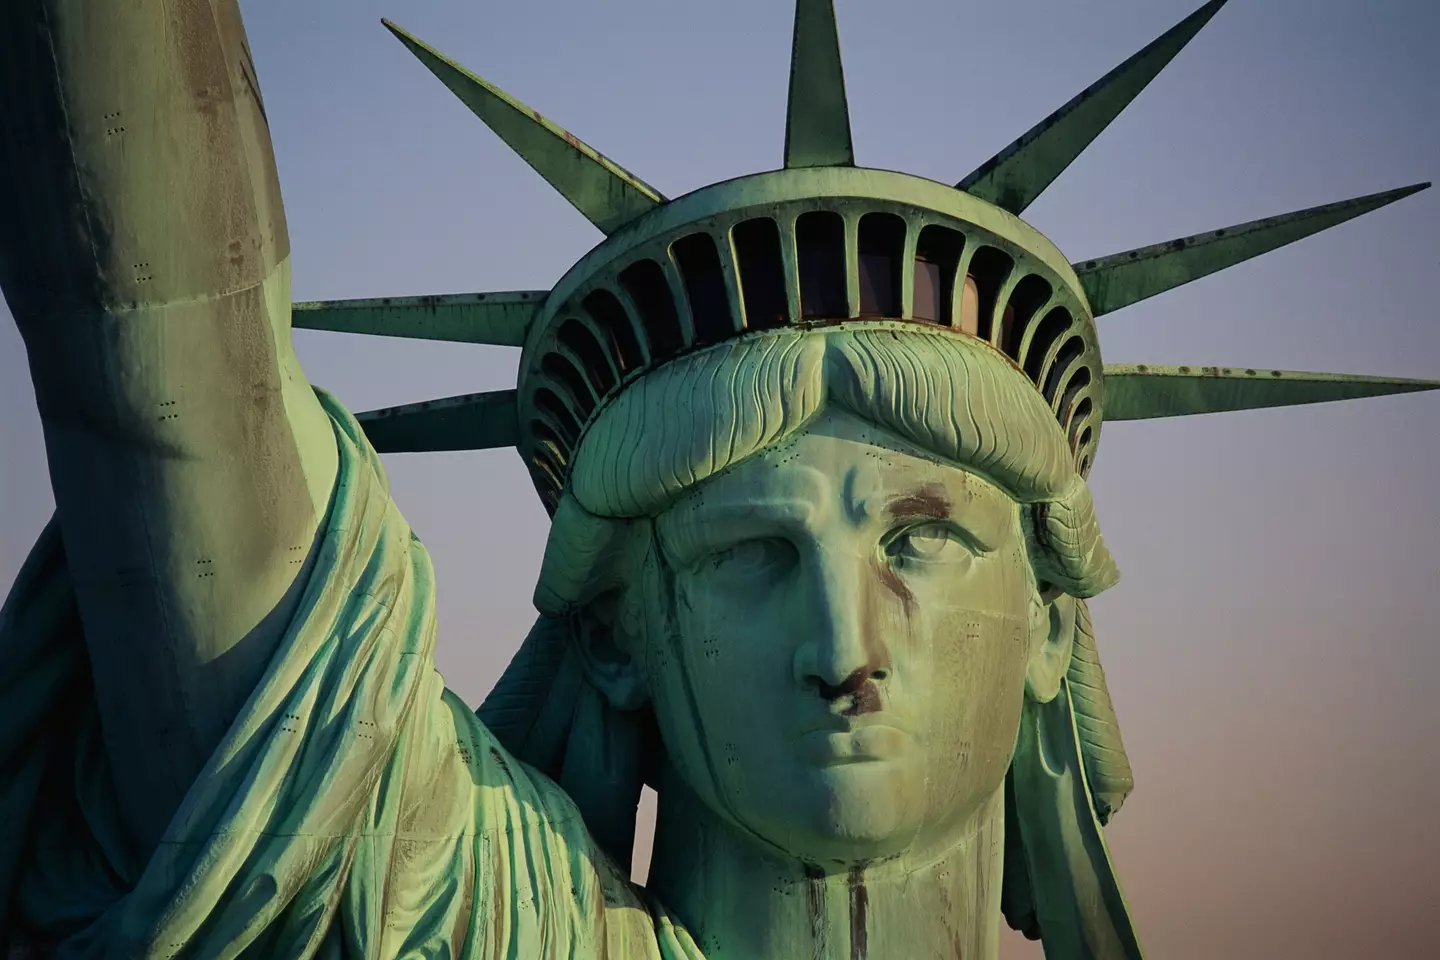 The Statue of Liberty was originally copper-colored.